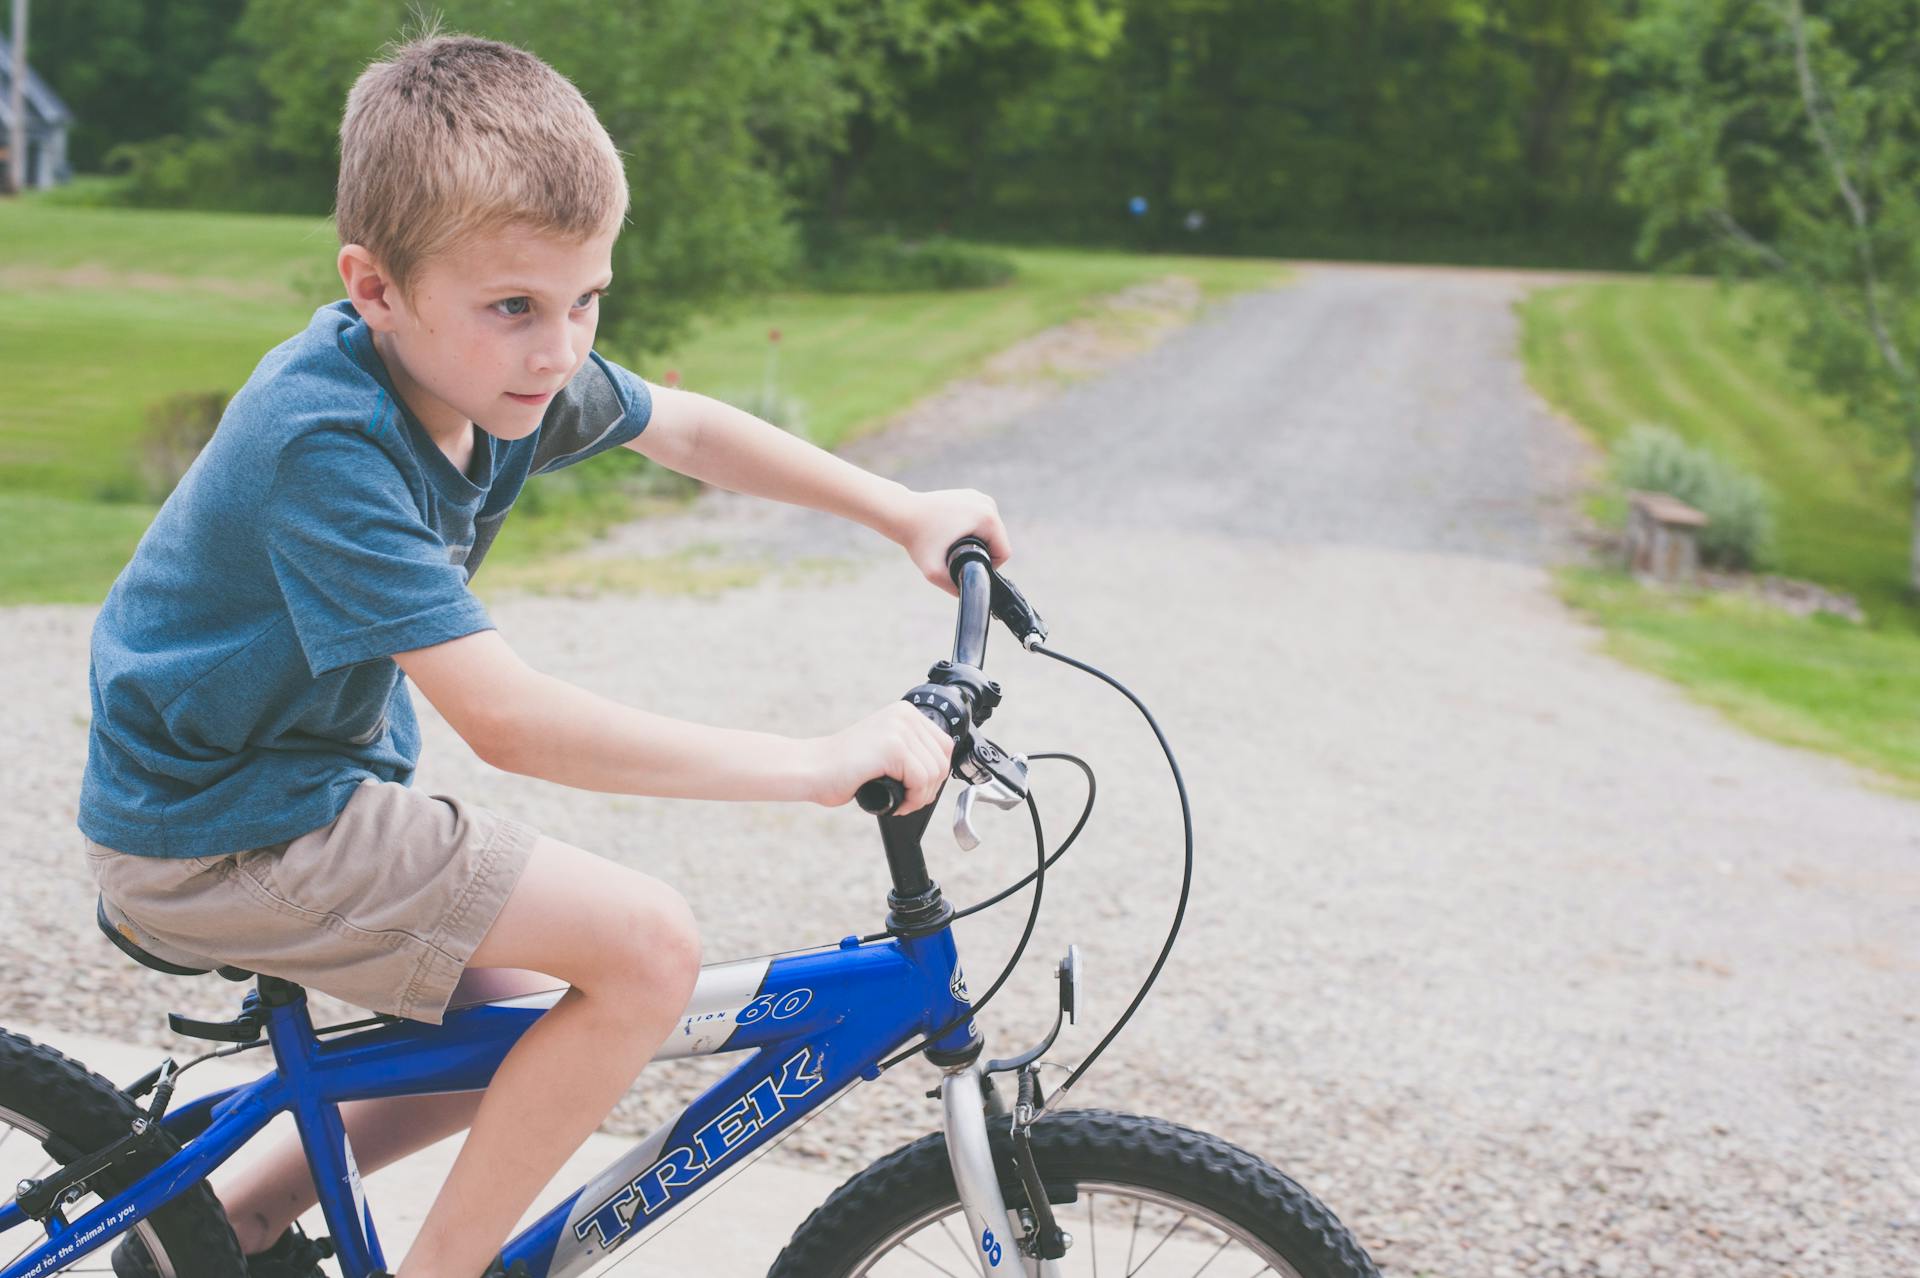 Garçon roulant sur un vélo bleu | Source : Pexels